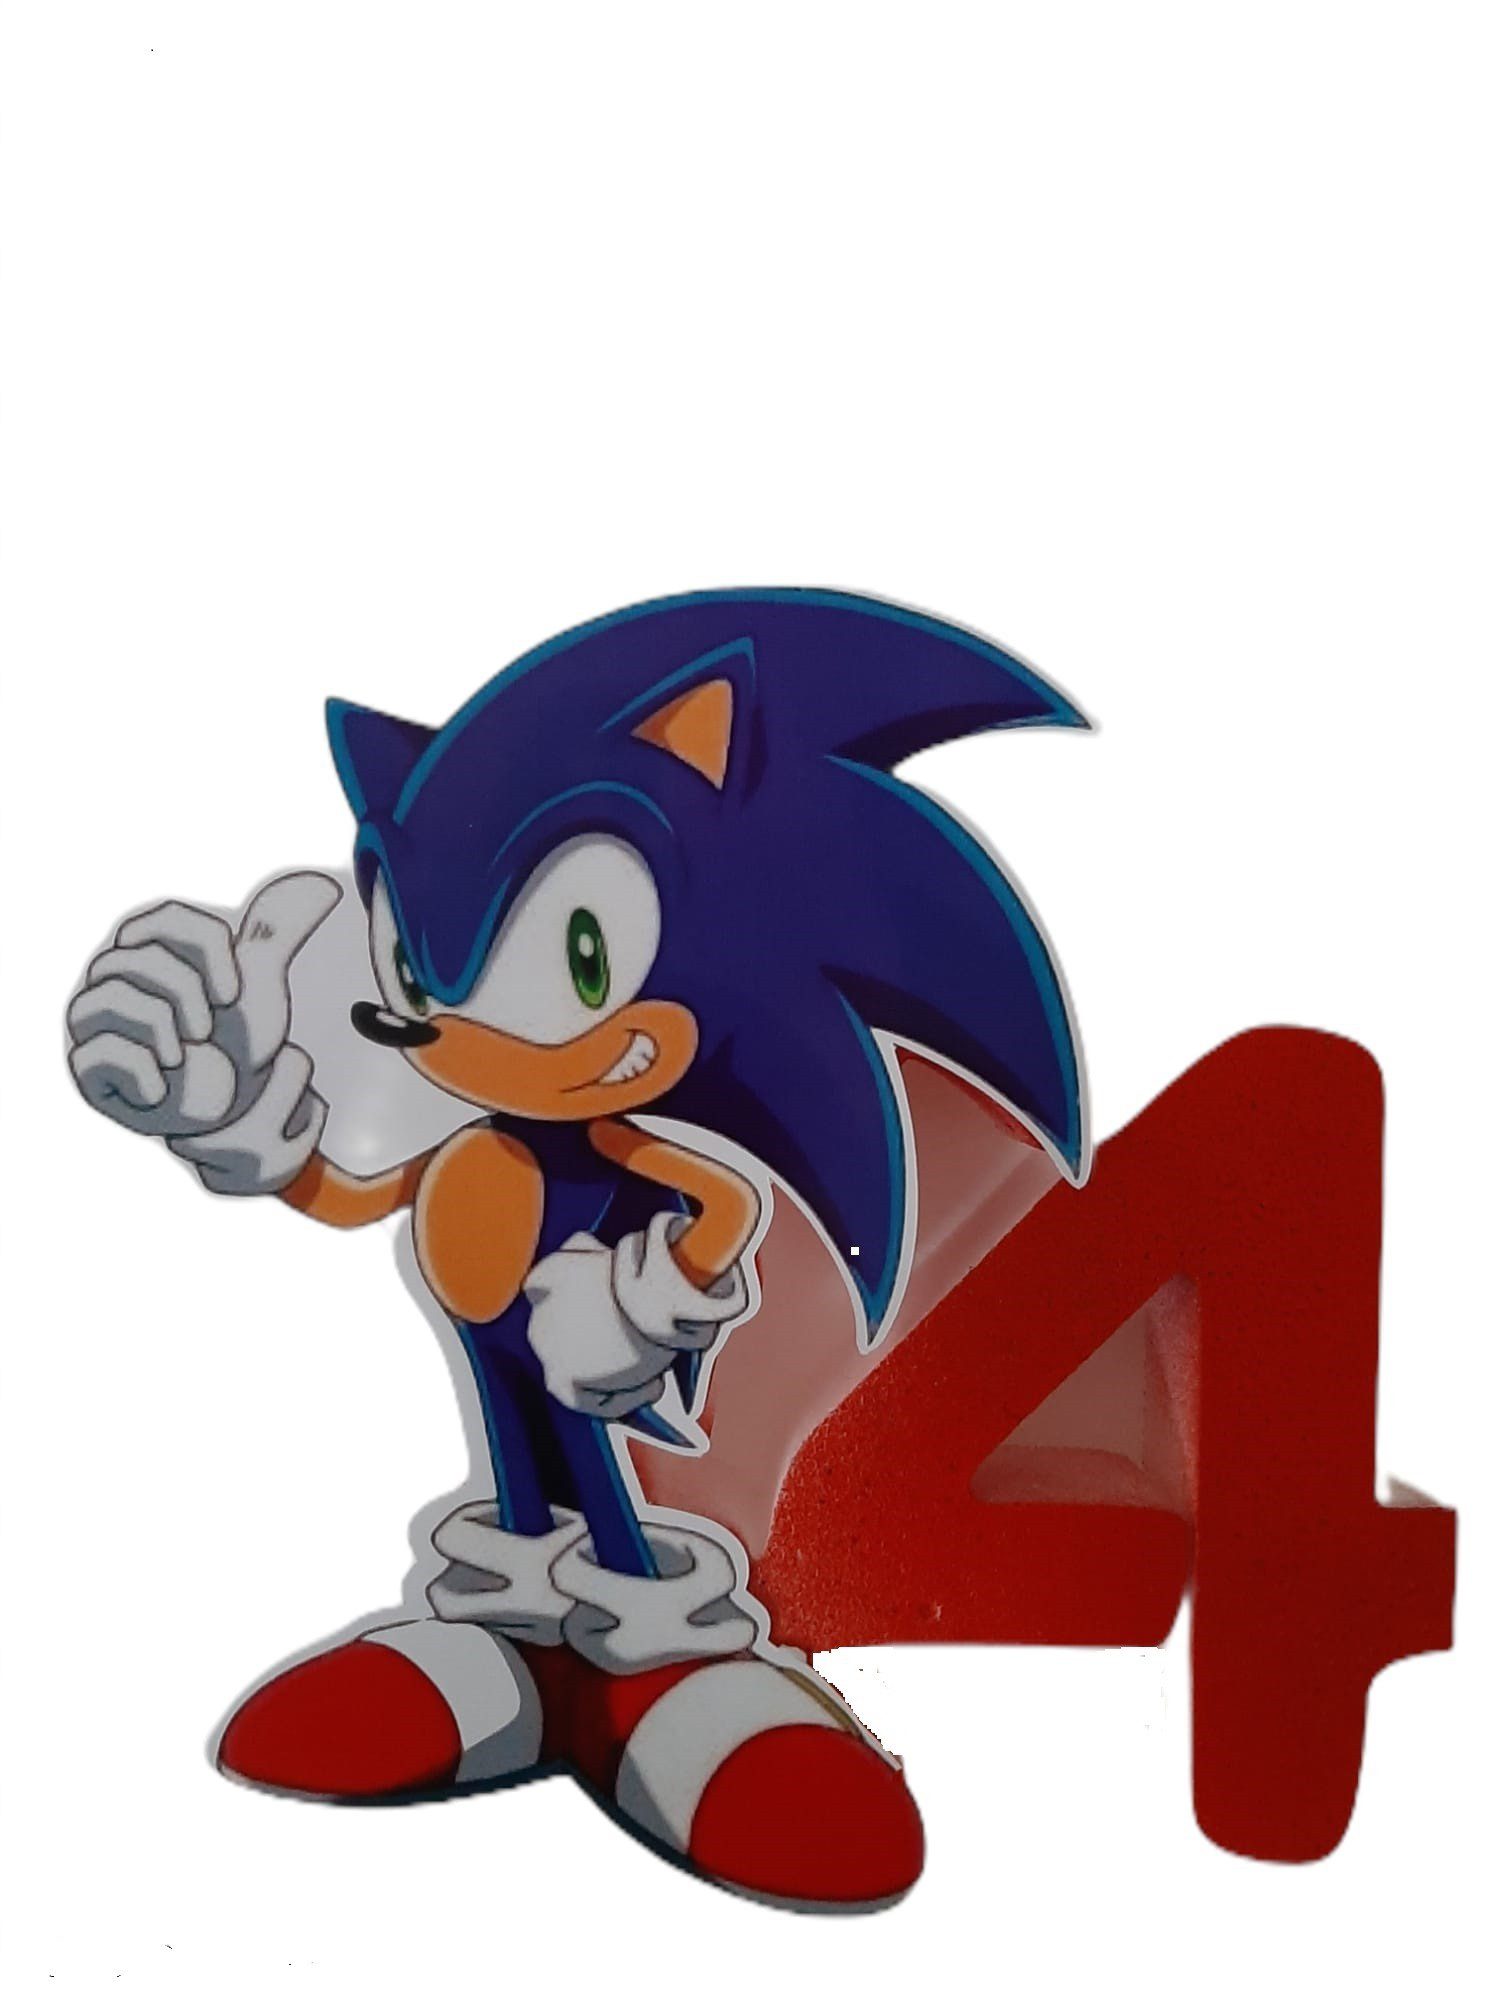 Sonic, altre offerte per il suo compleanno 